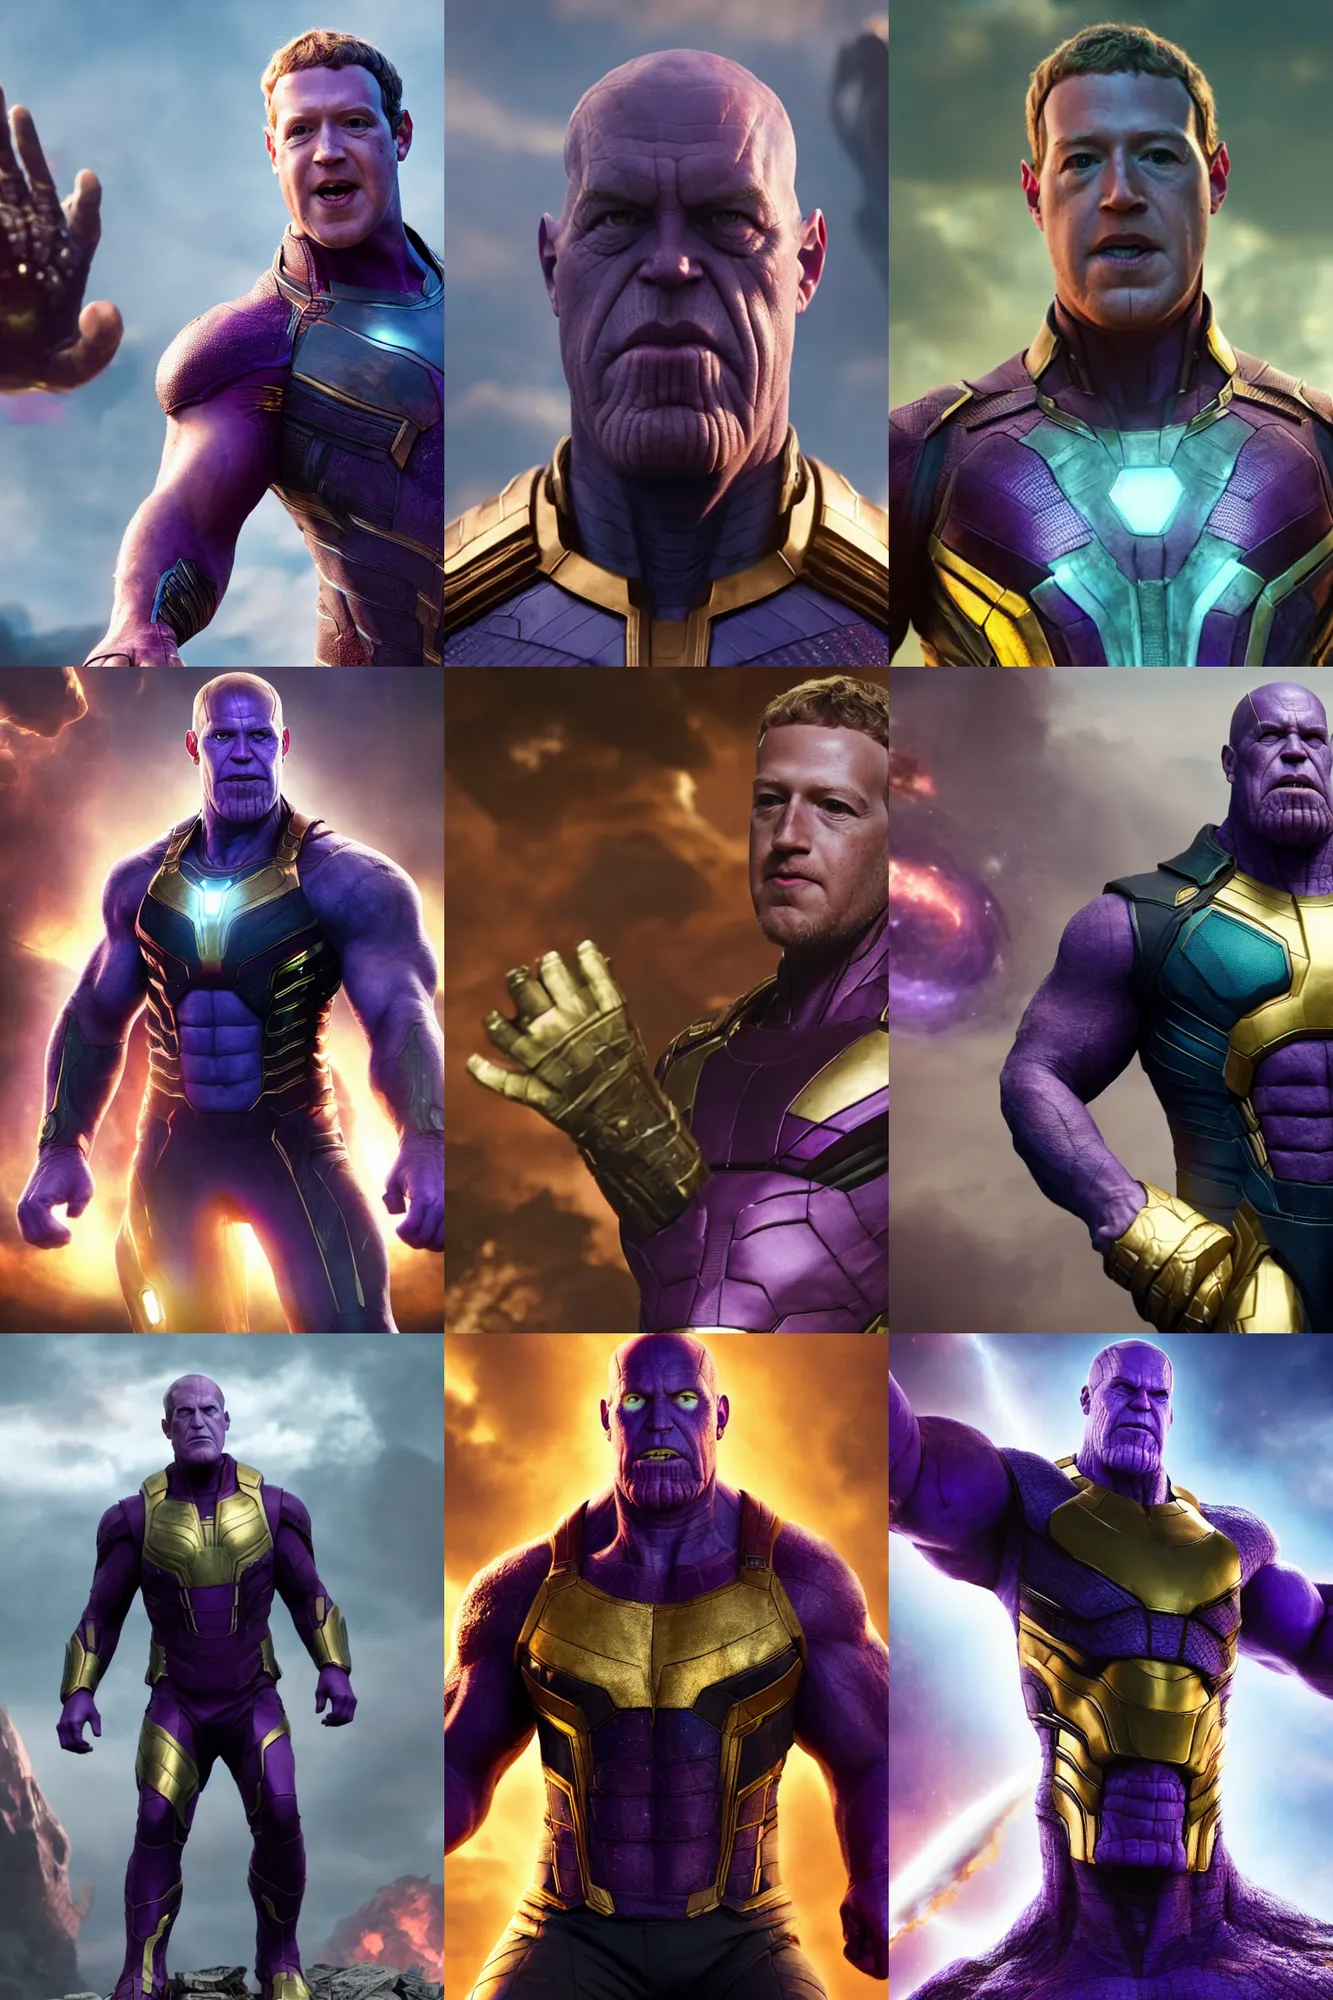 Prompt: Mark Zuckerberg as Thanos, The Avengers, 4k